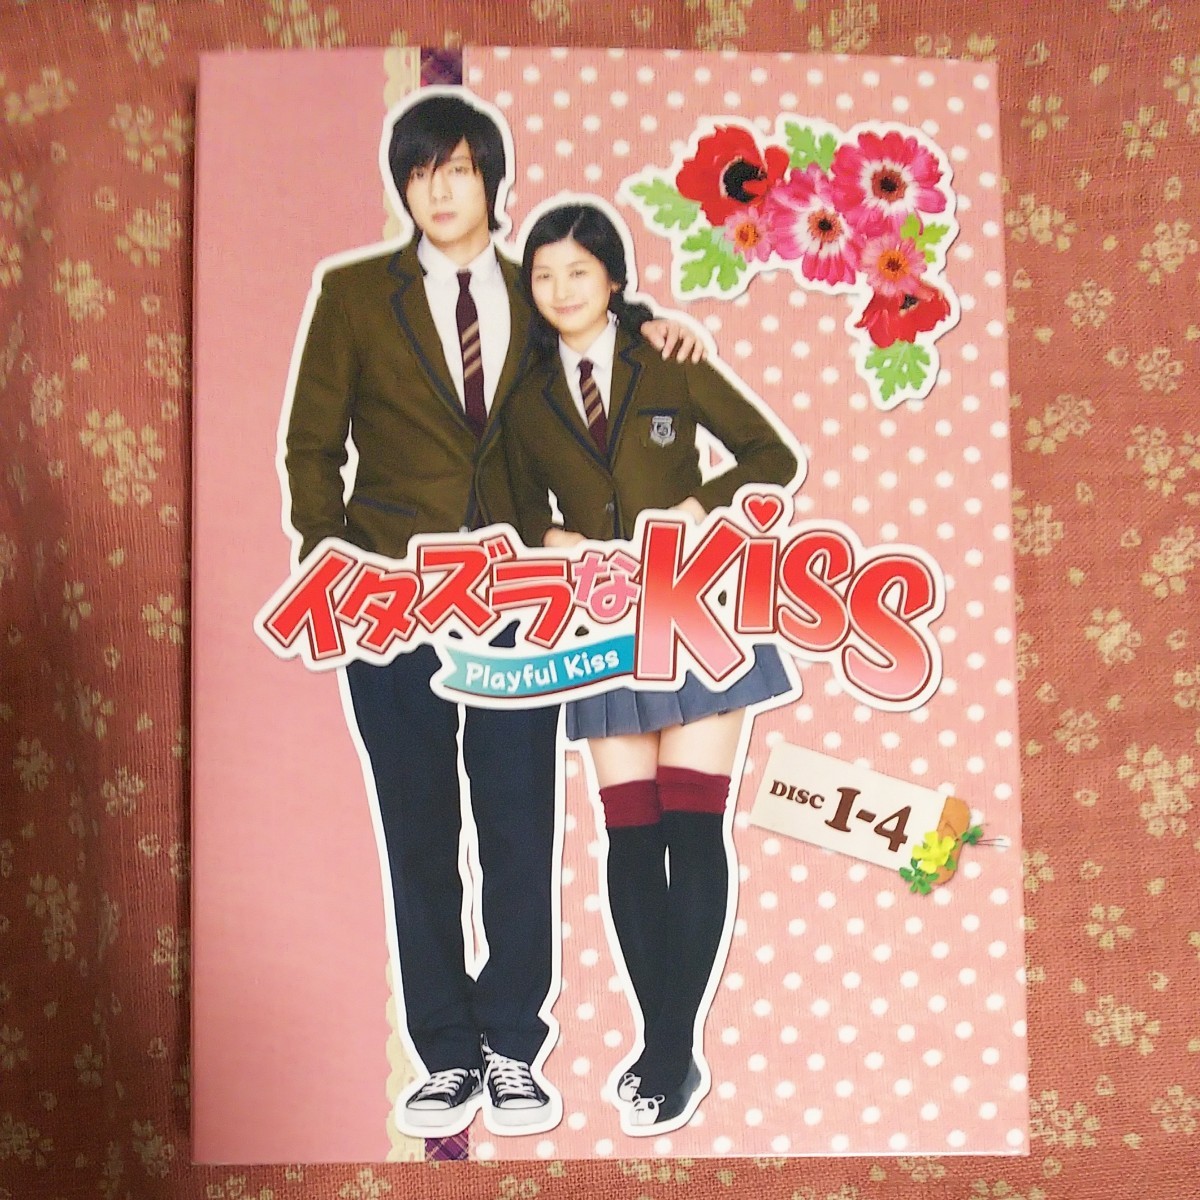  韓国ドラマ、イタズラなKiss Playful Kiss  DVD-BOX1 キム・ヒョンジュン